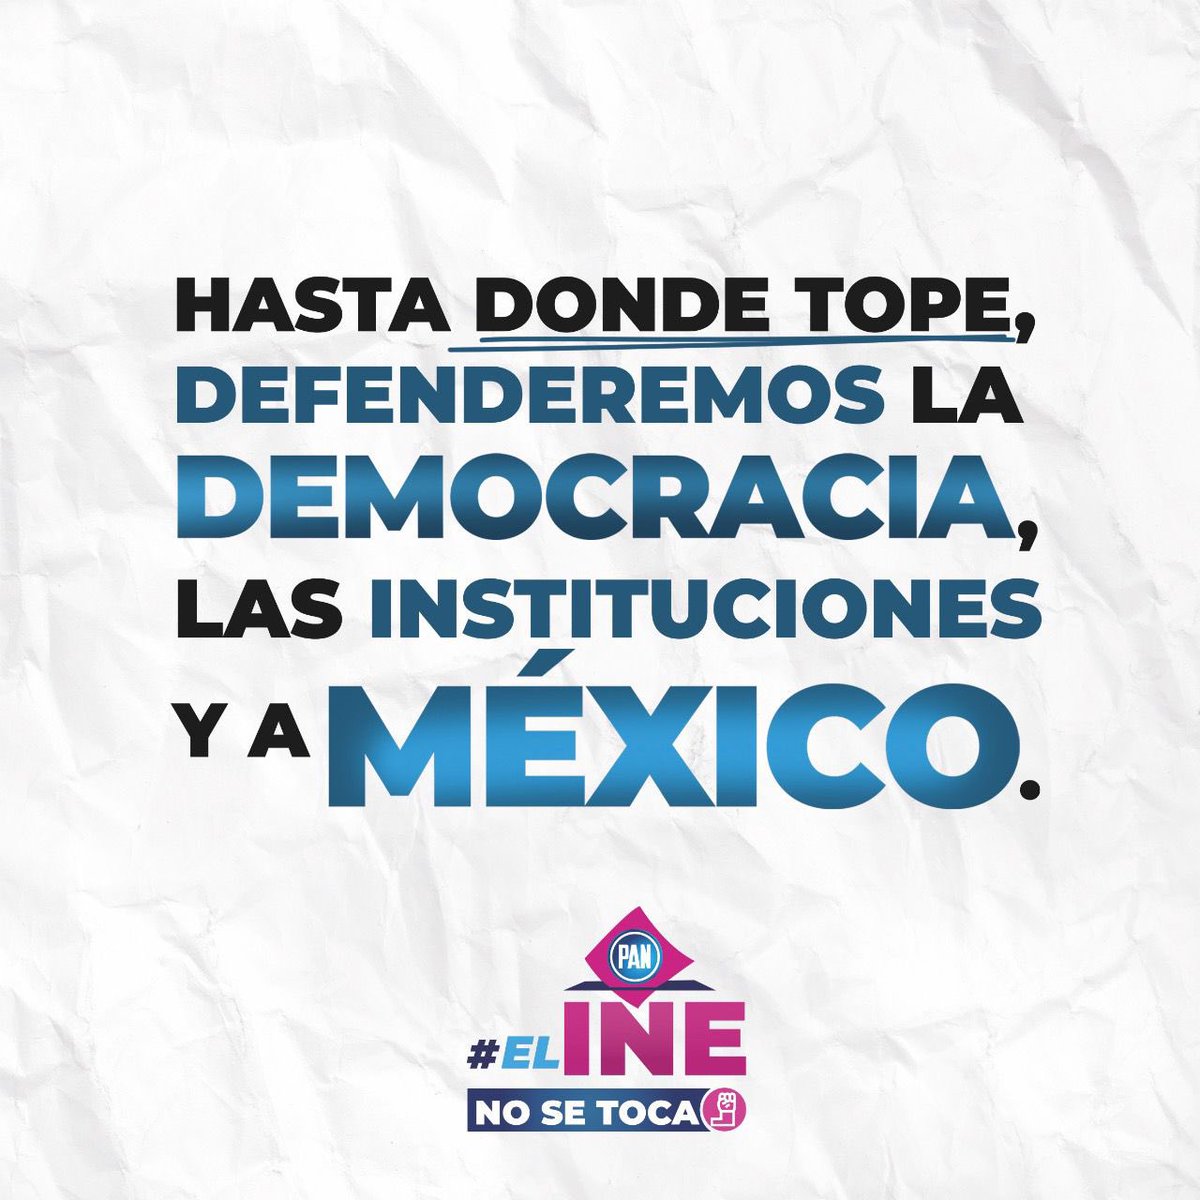 🔵⚪️ En @AccionNacional y desde #Guanajuato, daremos la batalla hasta donde tope, con argumentos y convicción, en defensa de nuestra democracia nacional. Lo decimos fuerte y claro: ¡#ElINENoSeToca! 👊🇲🇽